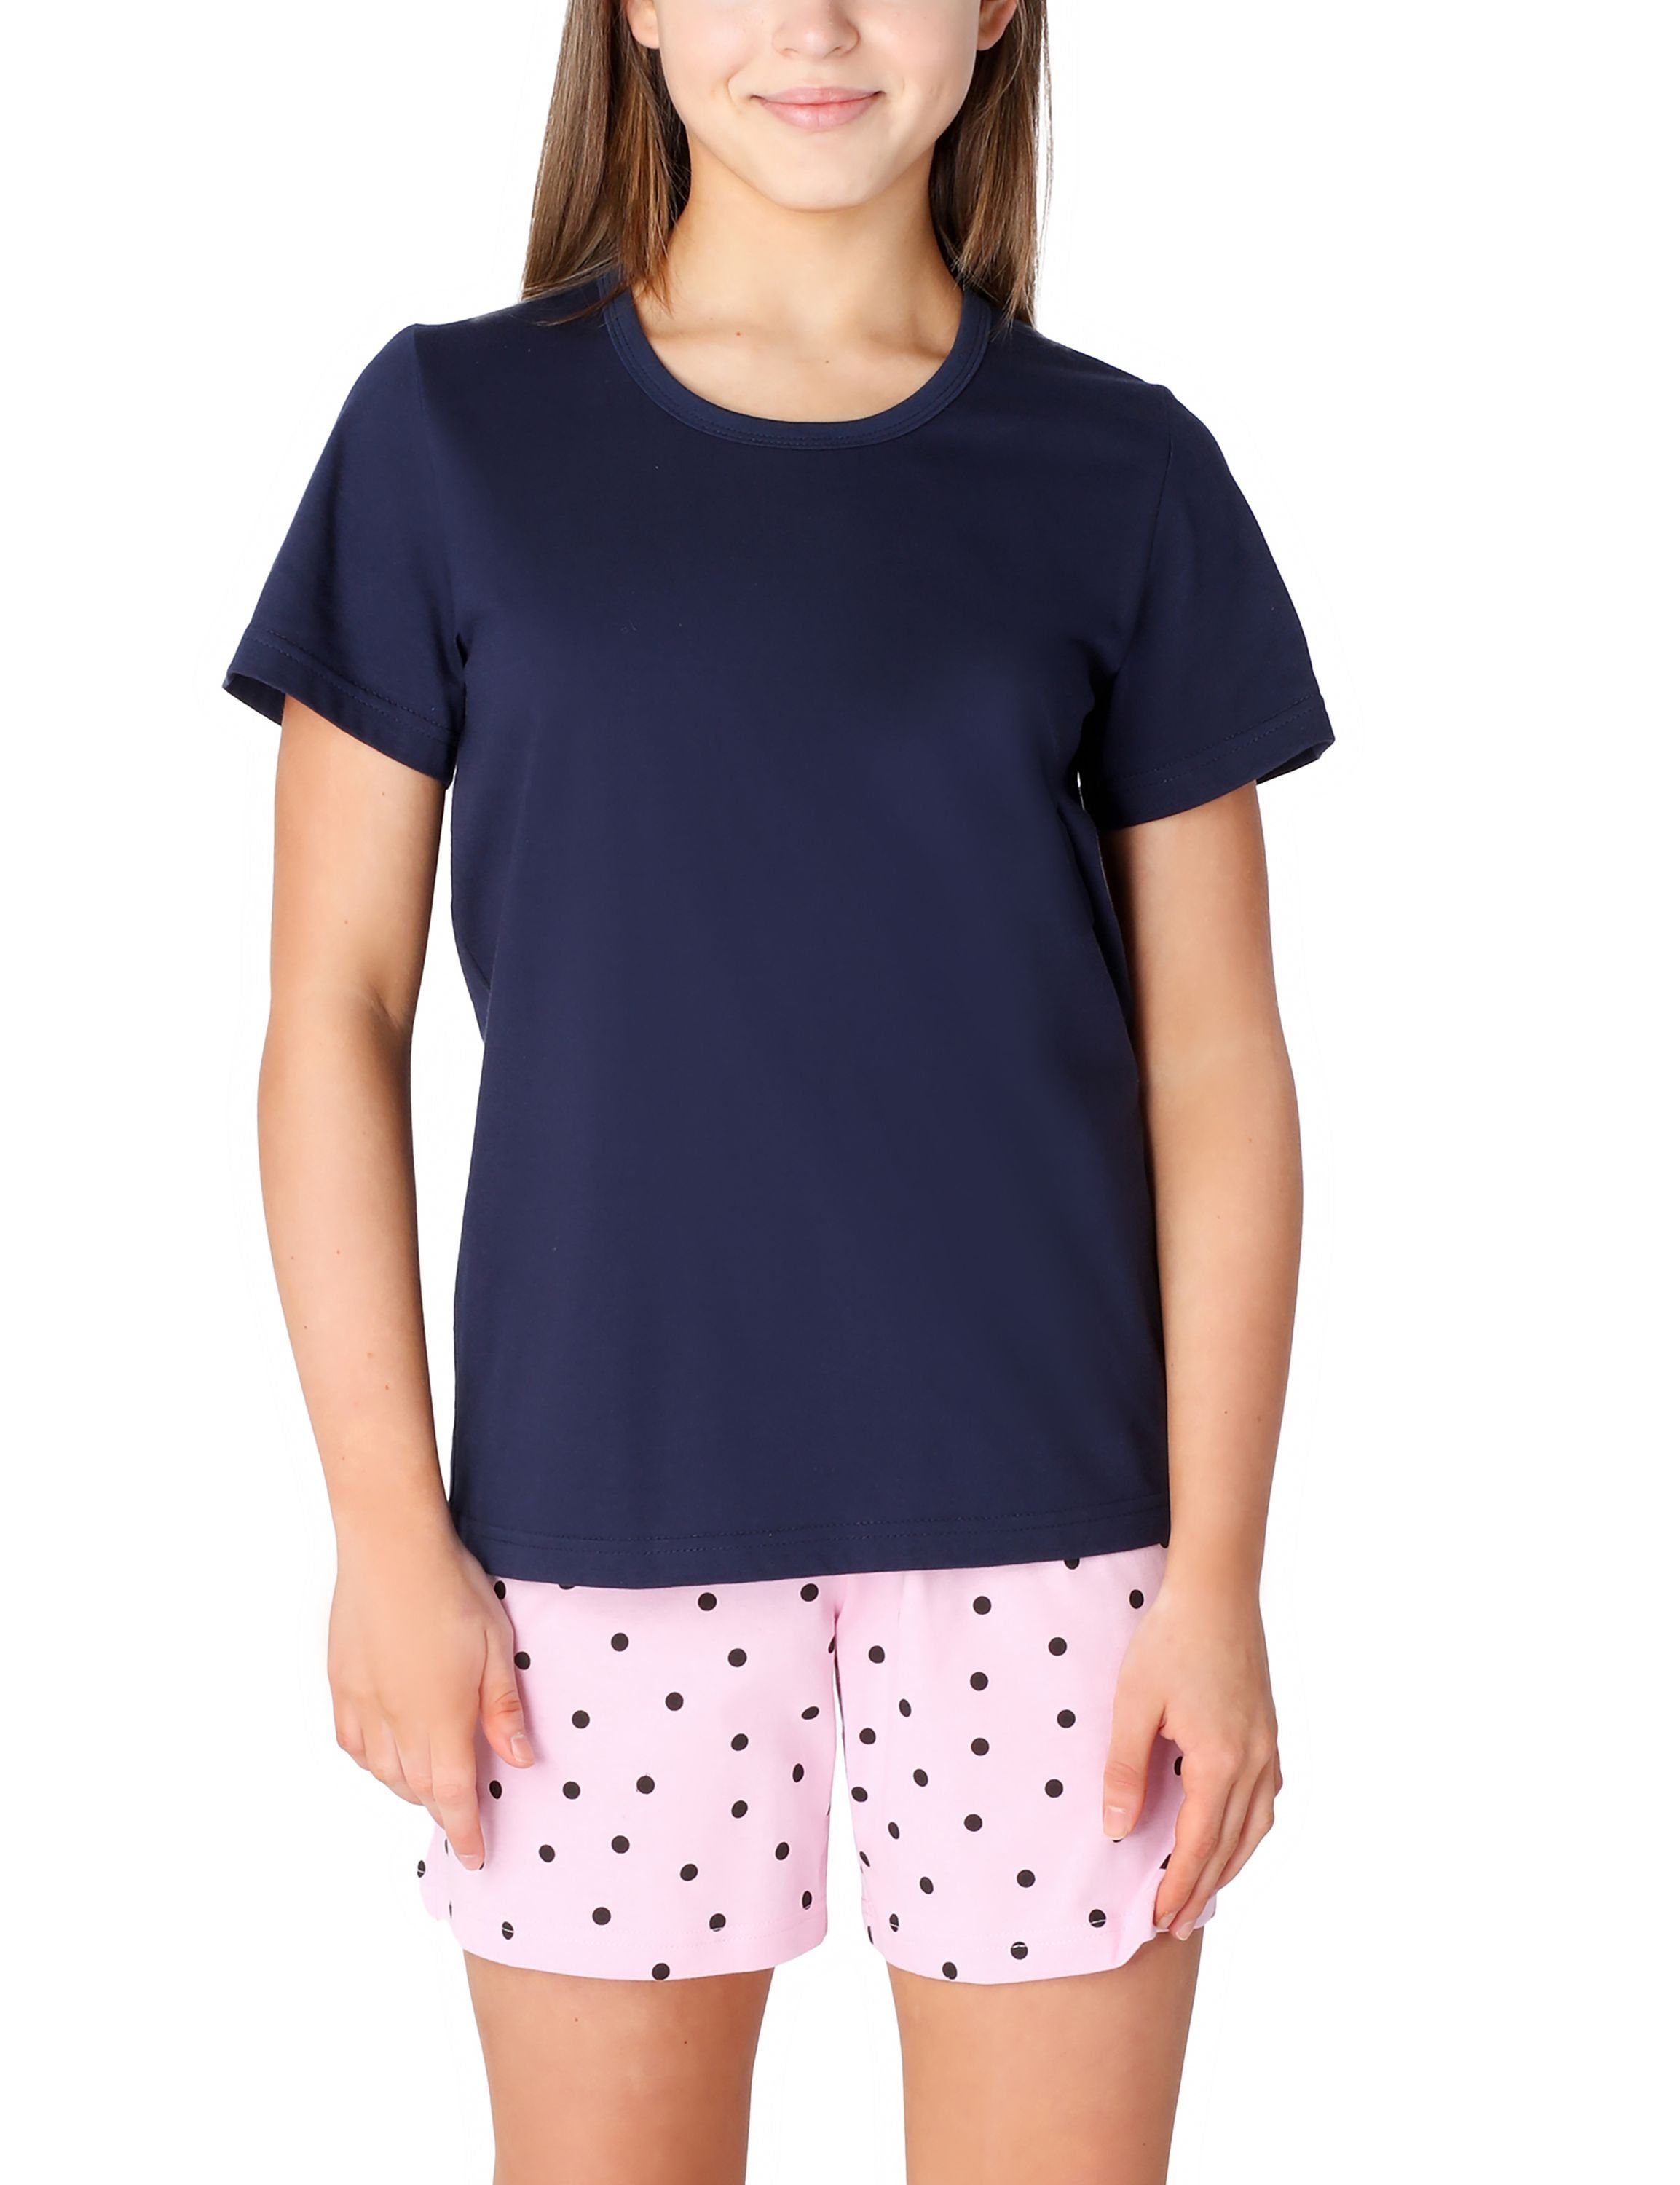 Style Baumwolle Kurz aus Marine/Rosa/Punkte Pyjama Merry MS10-265 Schlafanzüge Schlafanzug Set Mädchen